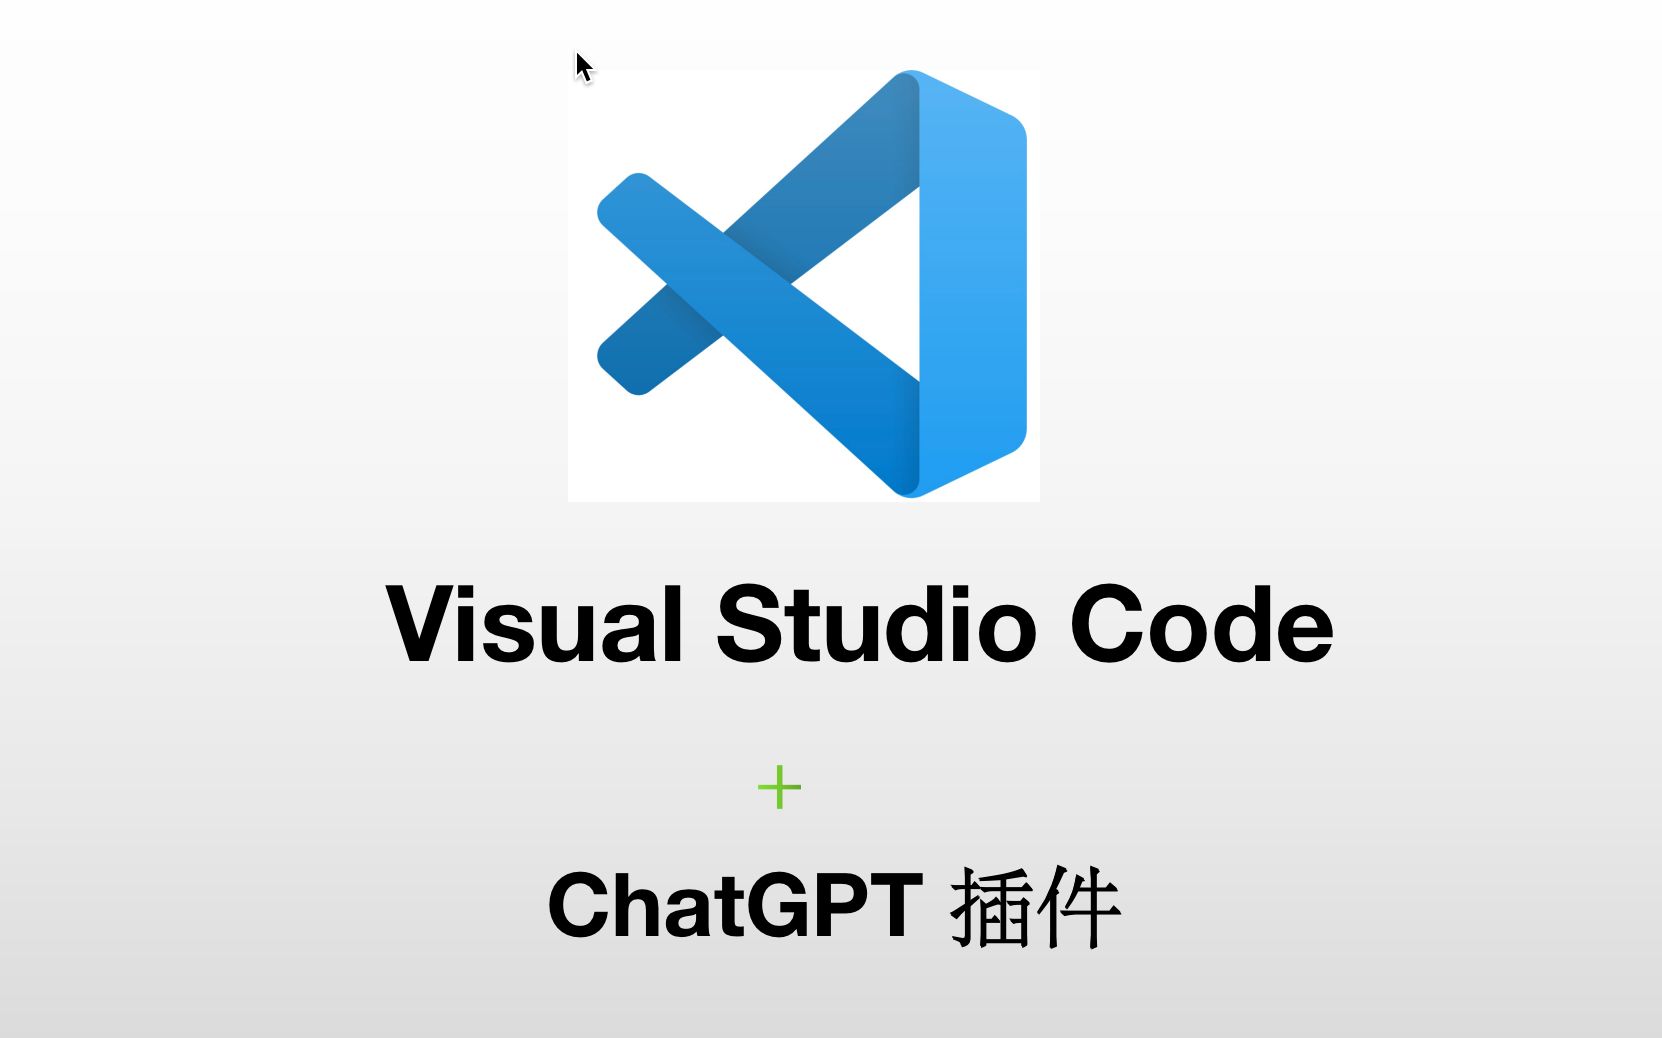 VsCode 中安装 ChatGPT 插件，让 AI 帮助我们写代码